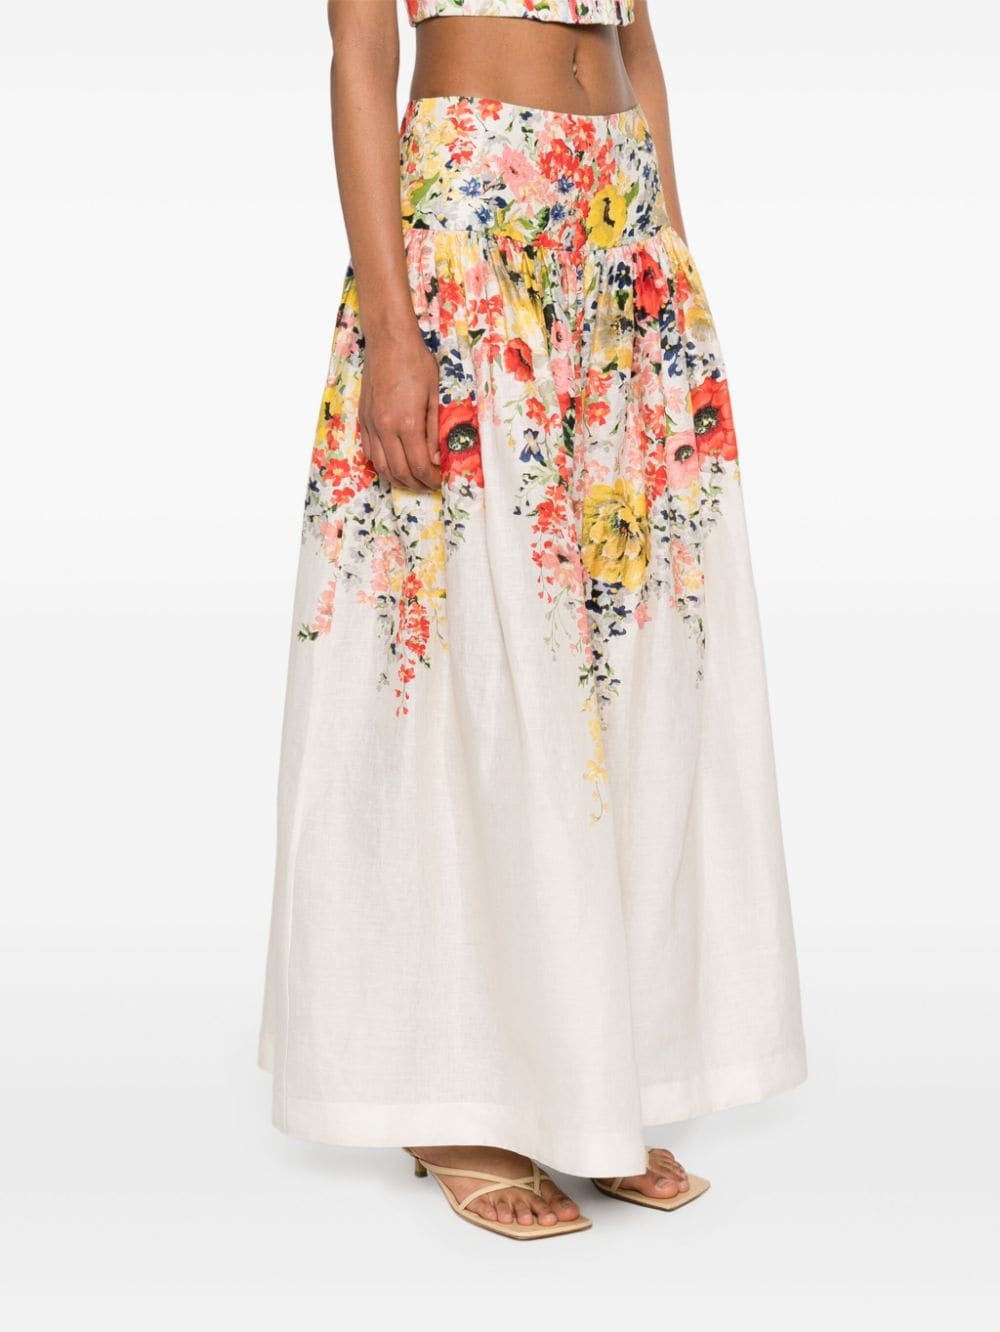 Váy Linen Họa Tiết Hoa Thêu cho Nữ Màu Kem - Kiểu Dáng Dài Vừa Phù Hợp Mùa Xuân Hè 24